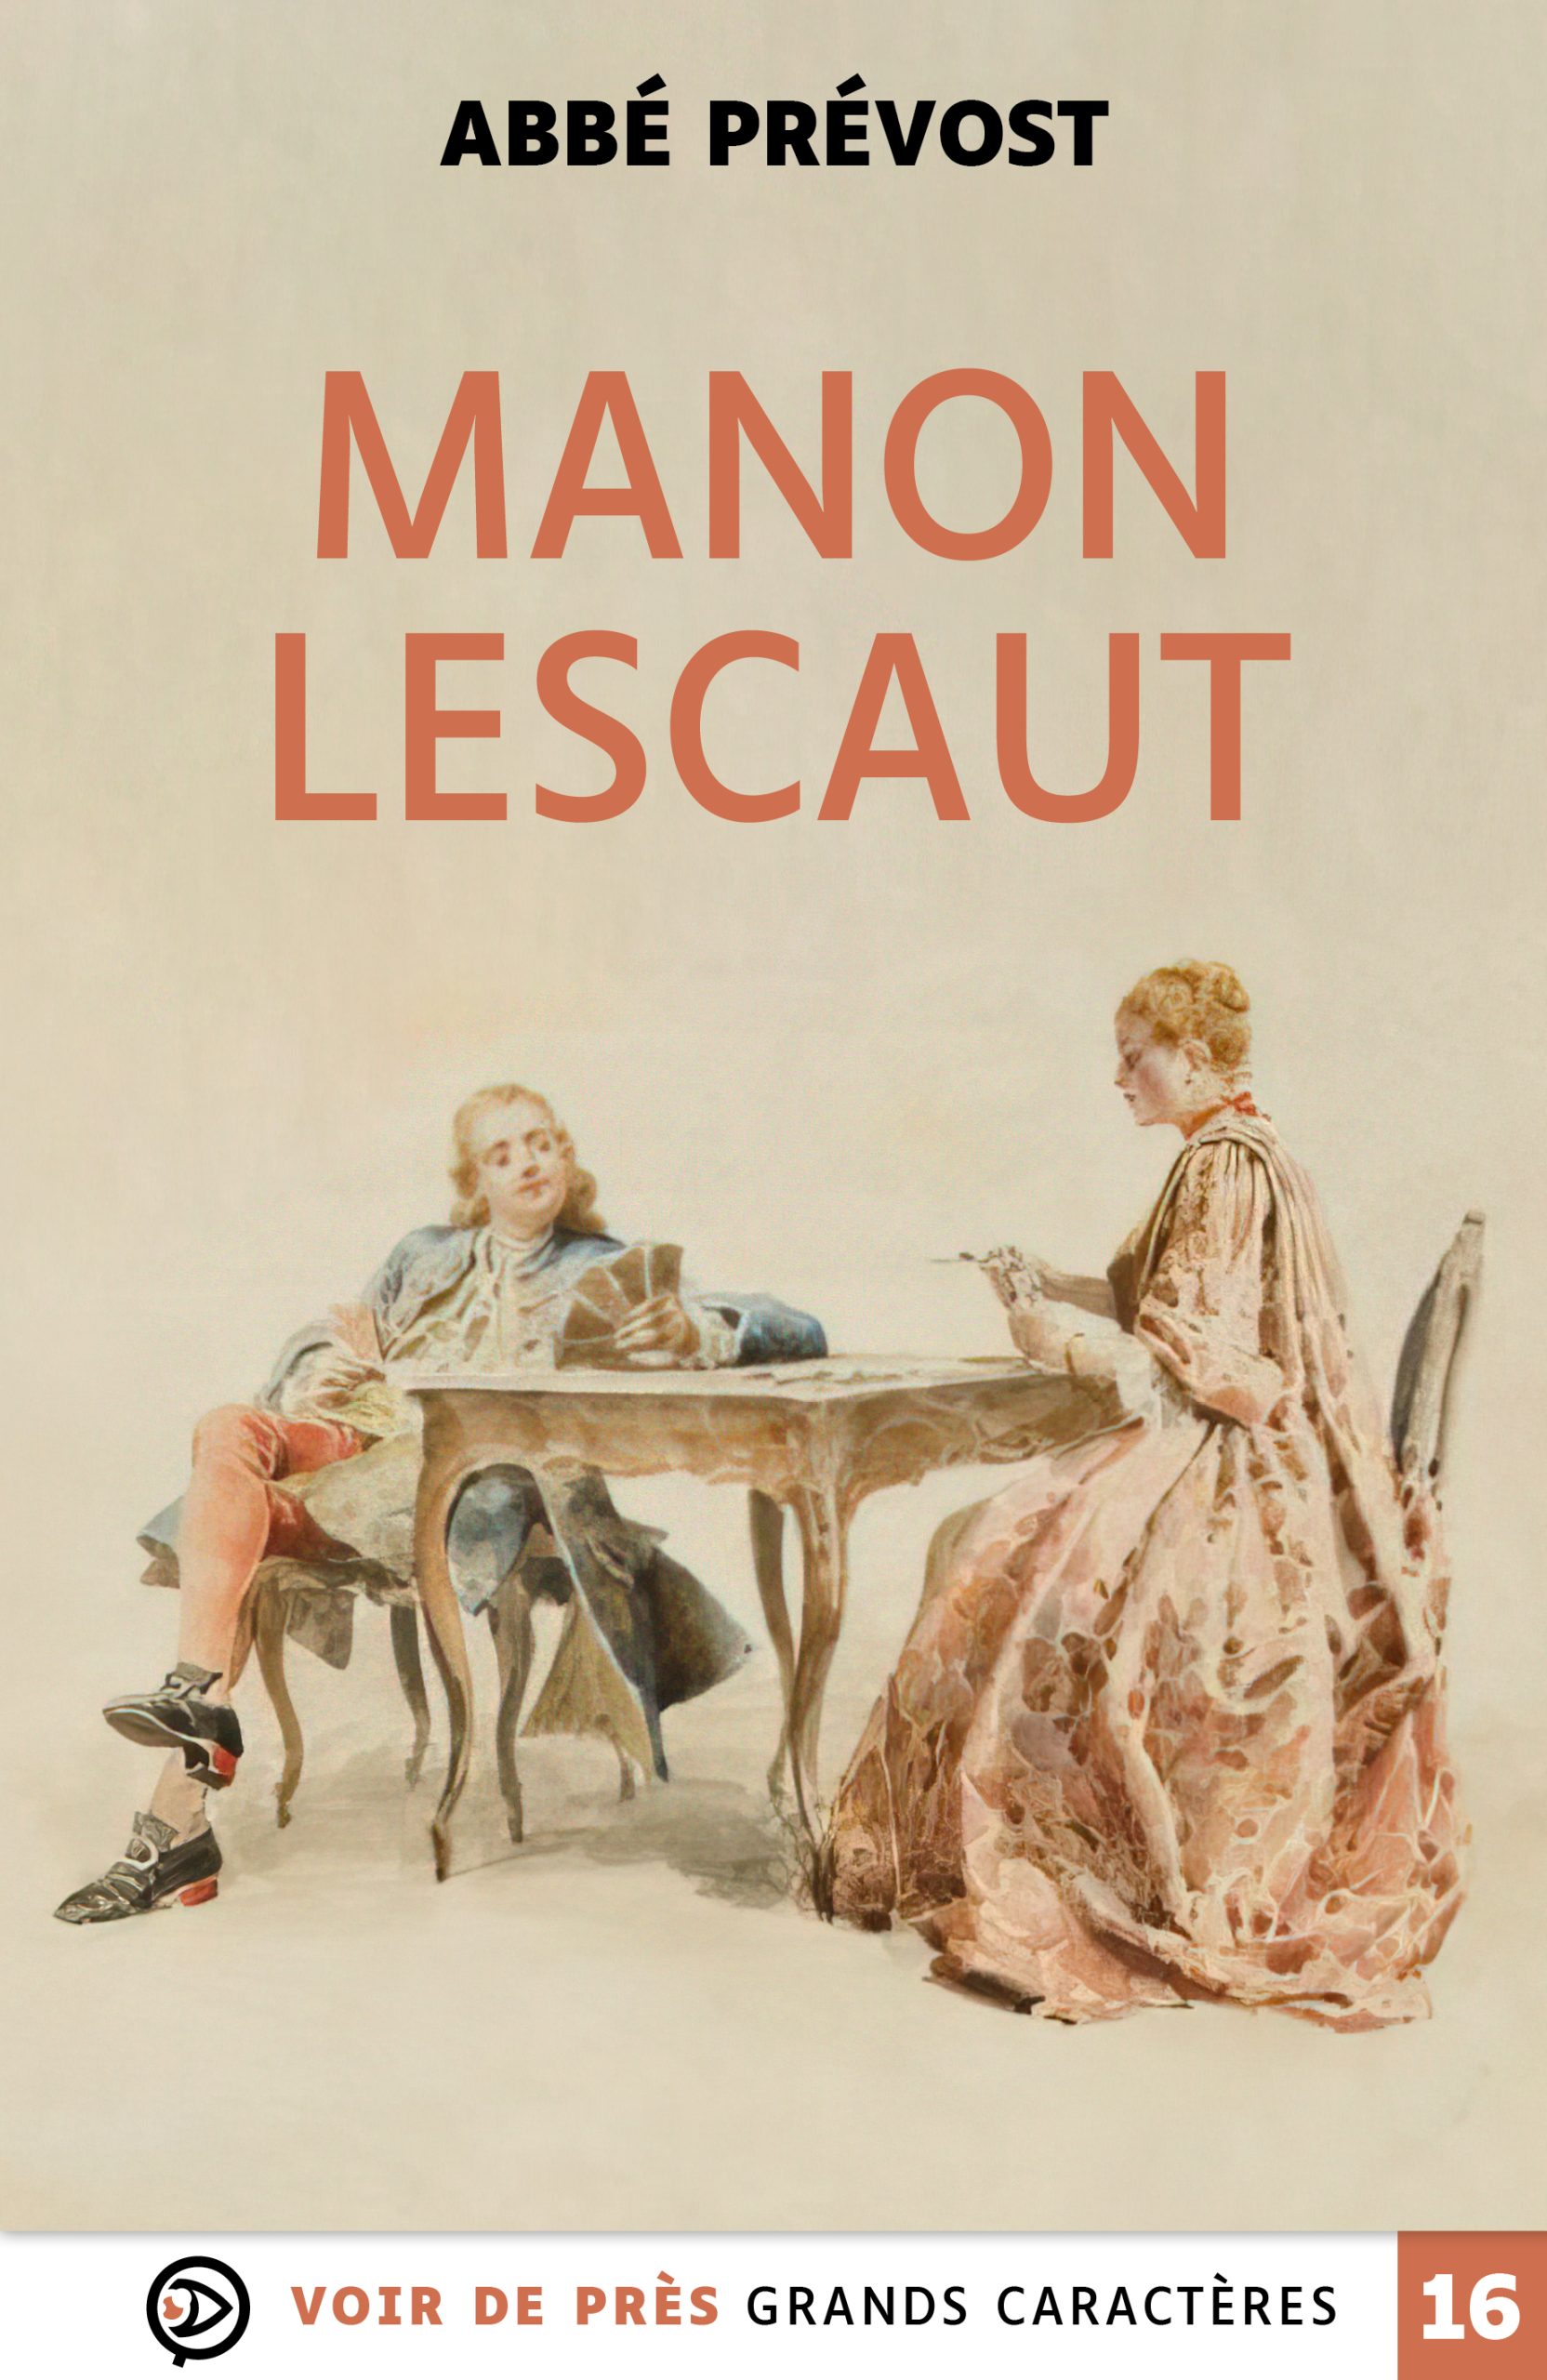 Couverture du livre en grands caractères Manon Lescaut de l'Abbé Prévost